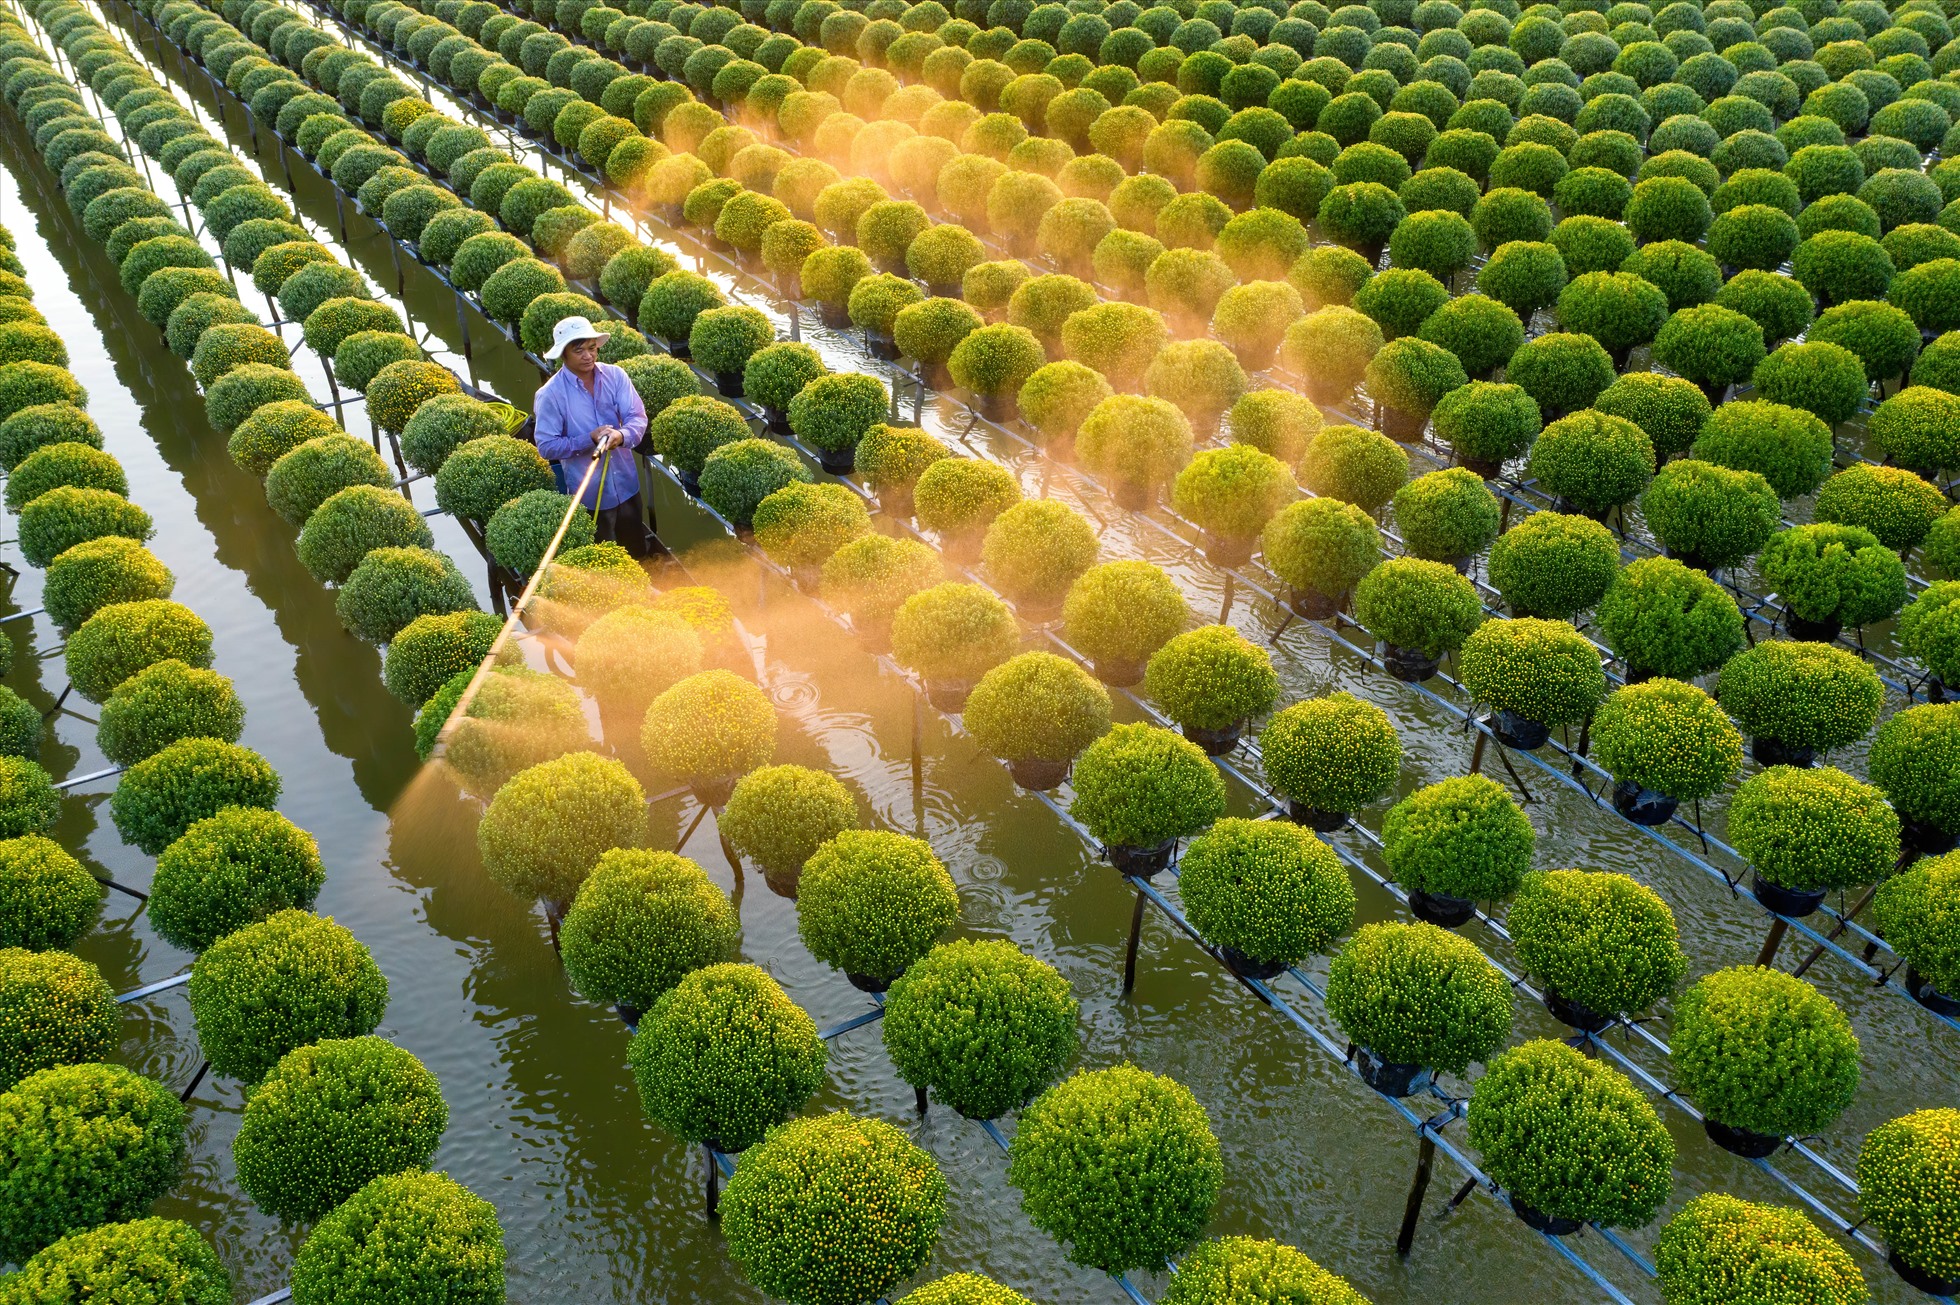 Ruộng hoa cúc mâm xôi ở làng hoa của tỉnh Đồng Tháp. Đây là nơi tập trung trồng cúc mâm xôi, cung ứng cho thị trường các tỉnh miền Tây vào dịp Tết.